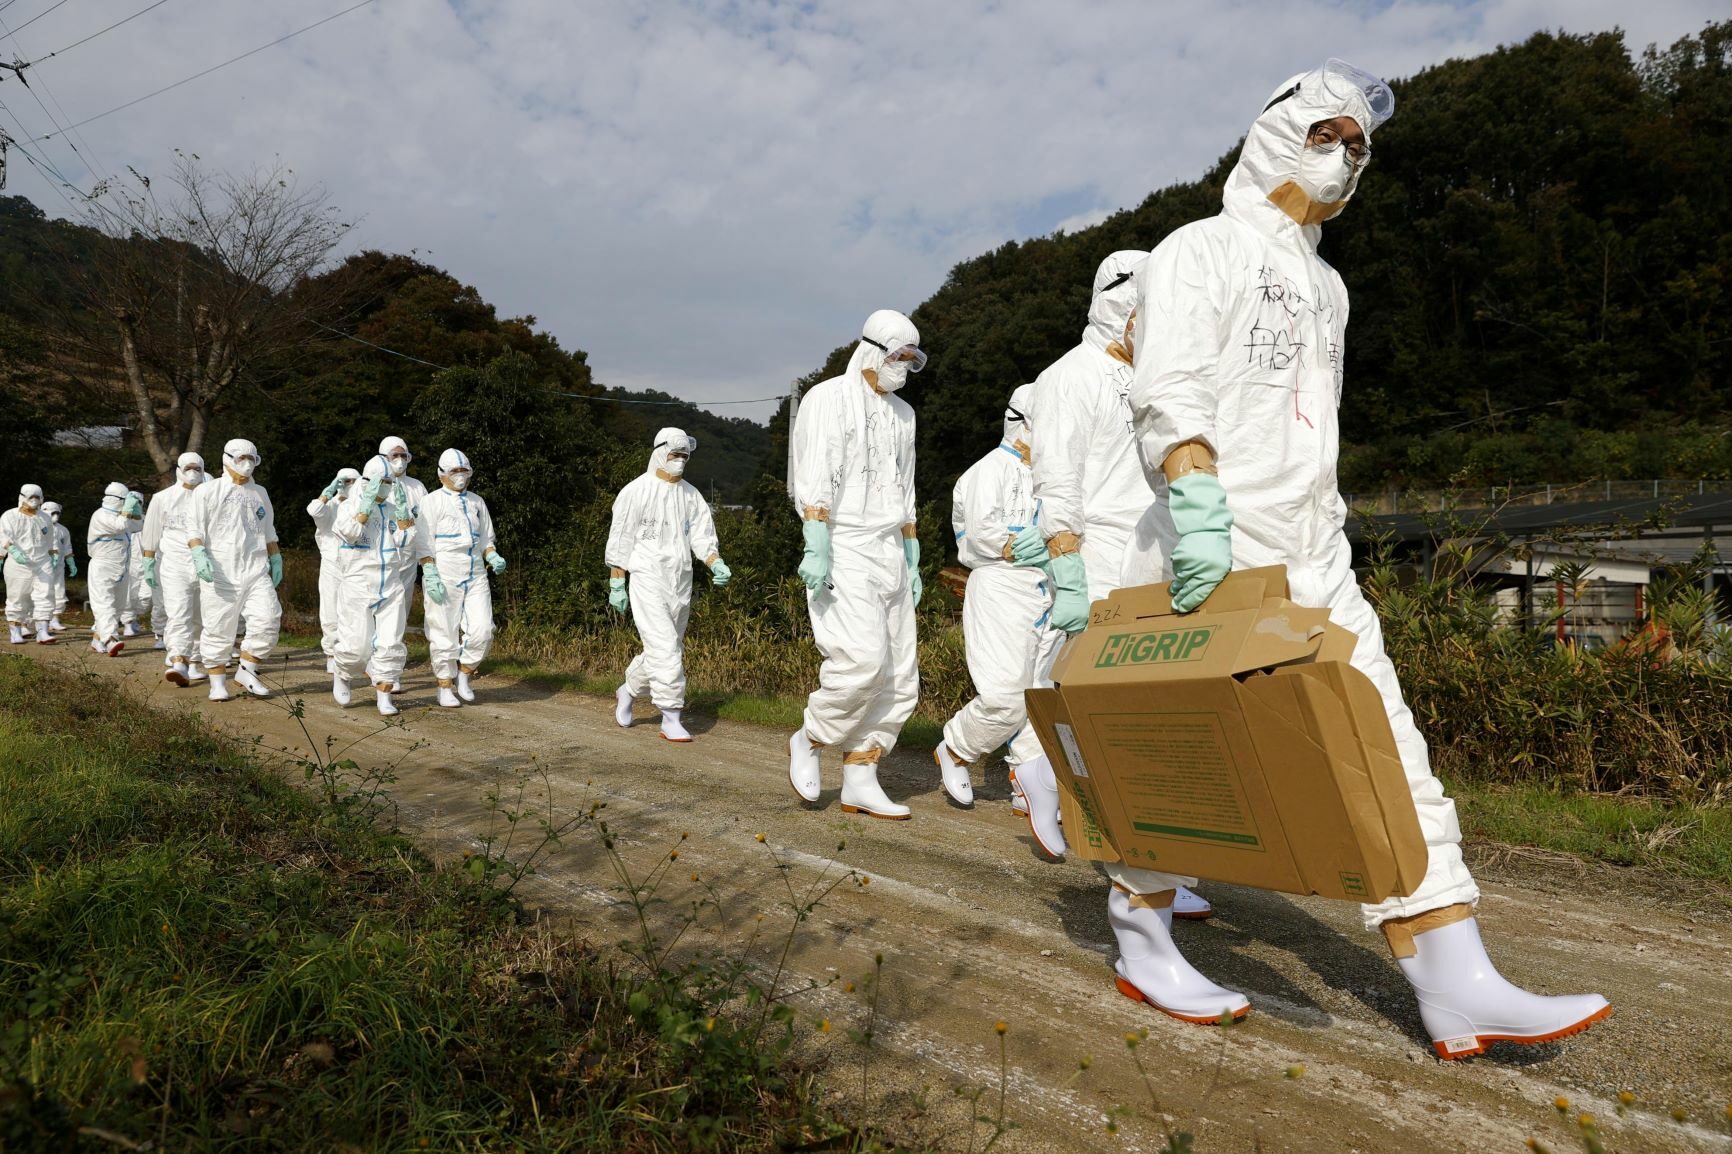 ญี่ปุ่นพบไข้หวัดนกระบาดในฟาร์มไก่ครั้งแรกของฤดูกาล ฆ่าทิ้งทันที 143,000 ตัว